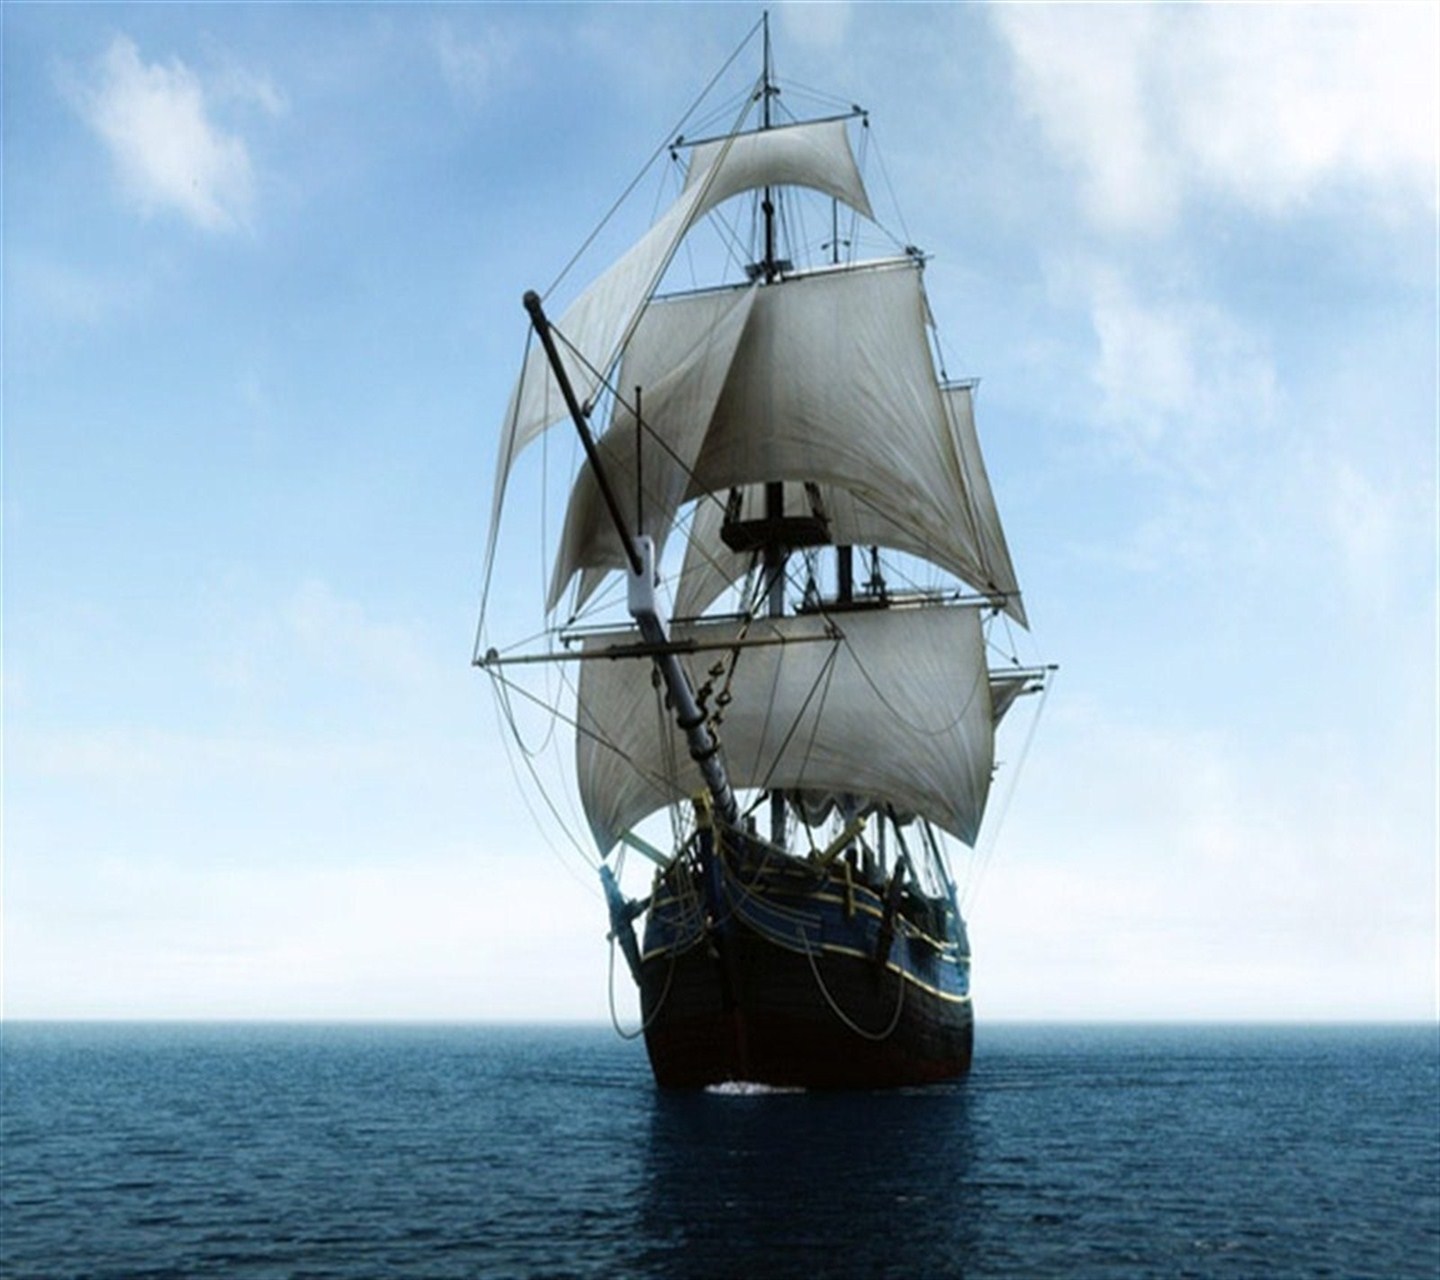 alte schiffstapete,fahrzeug,boot,segelschiff,barquentine,schaluppe des krieges